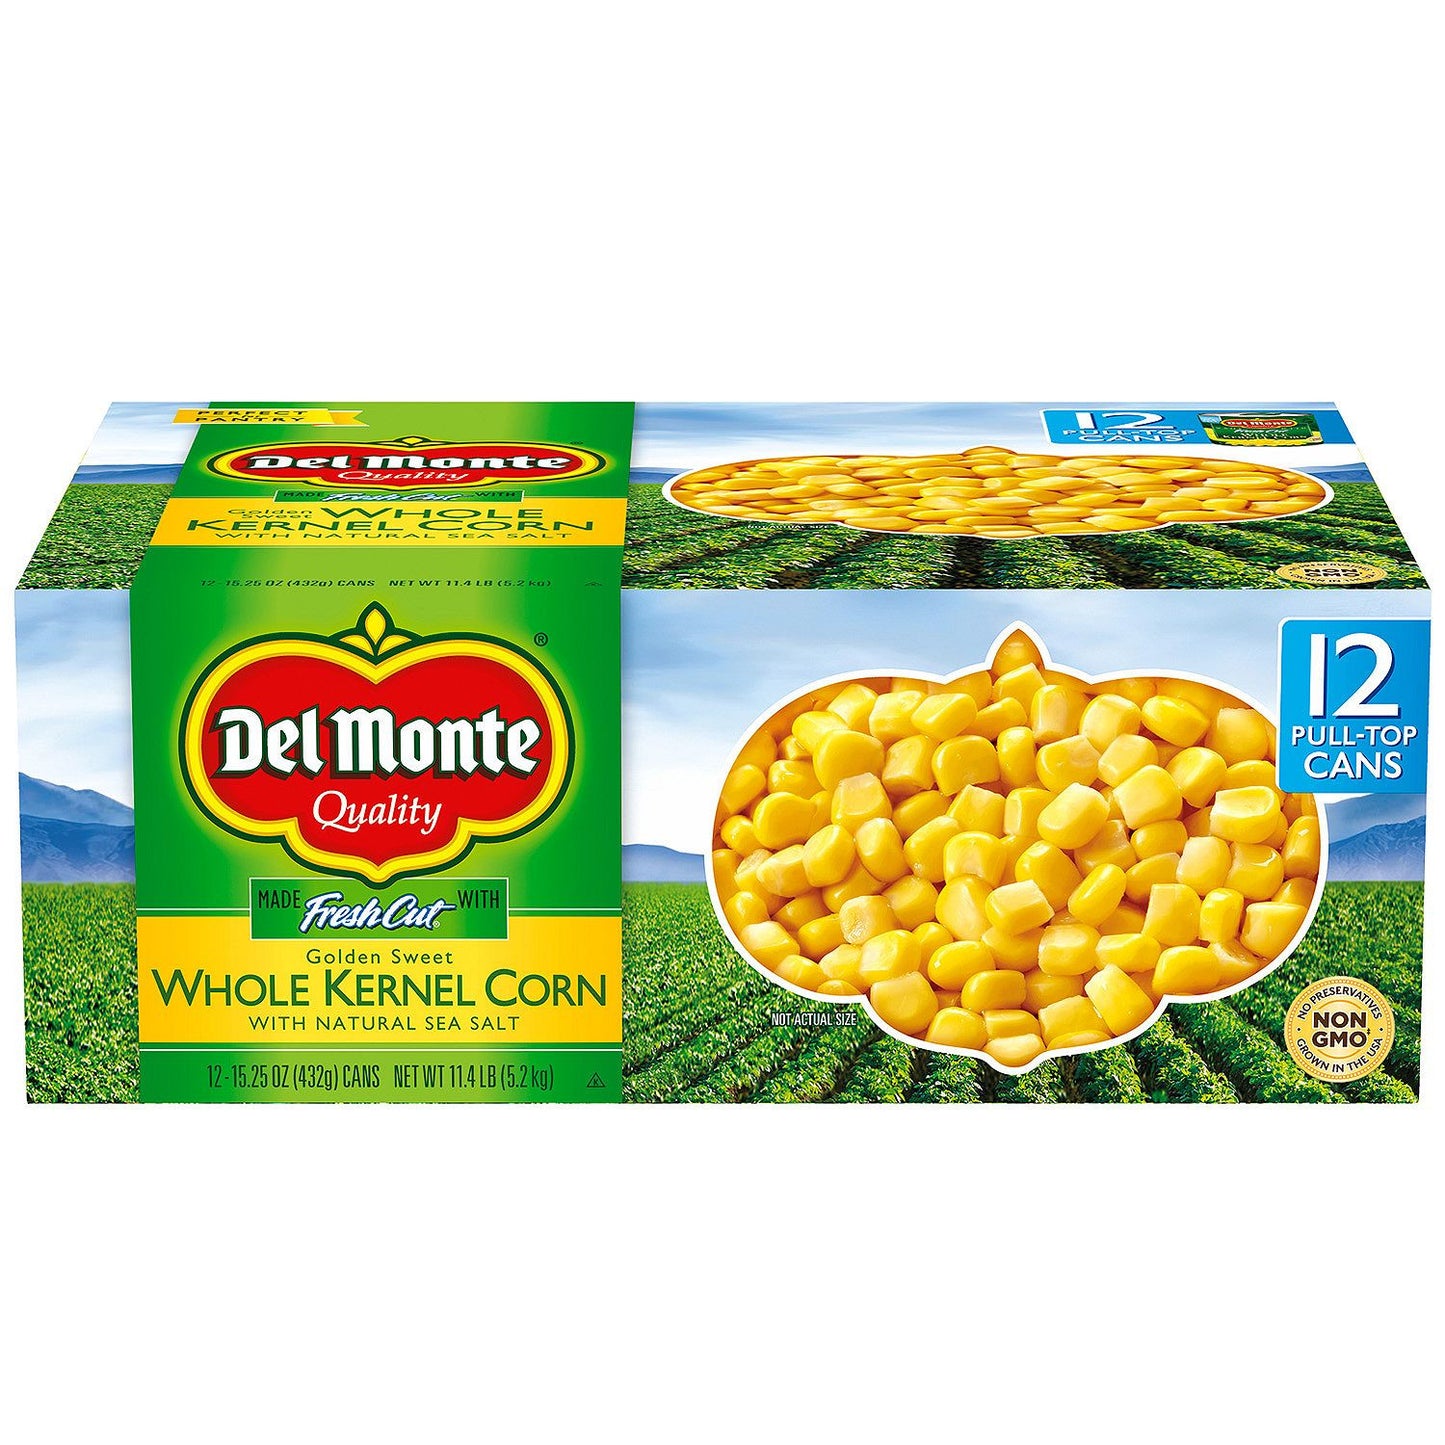 Del Monte Golden Sweet Whole Kernel Corn (15.25 oz. cans, 12 pk.)